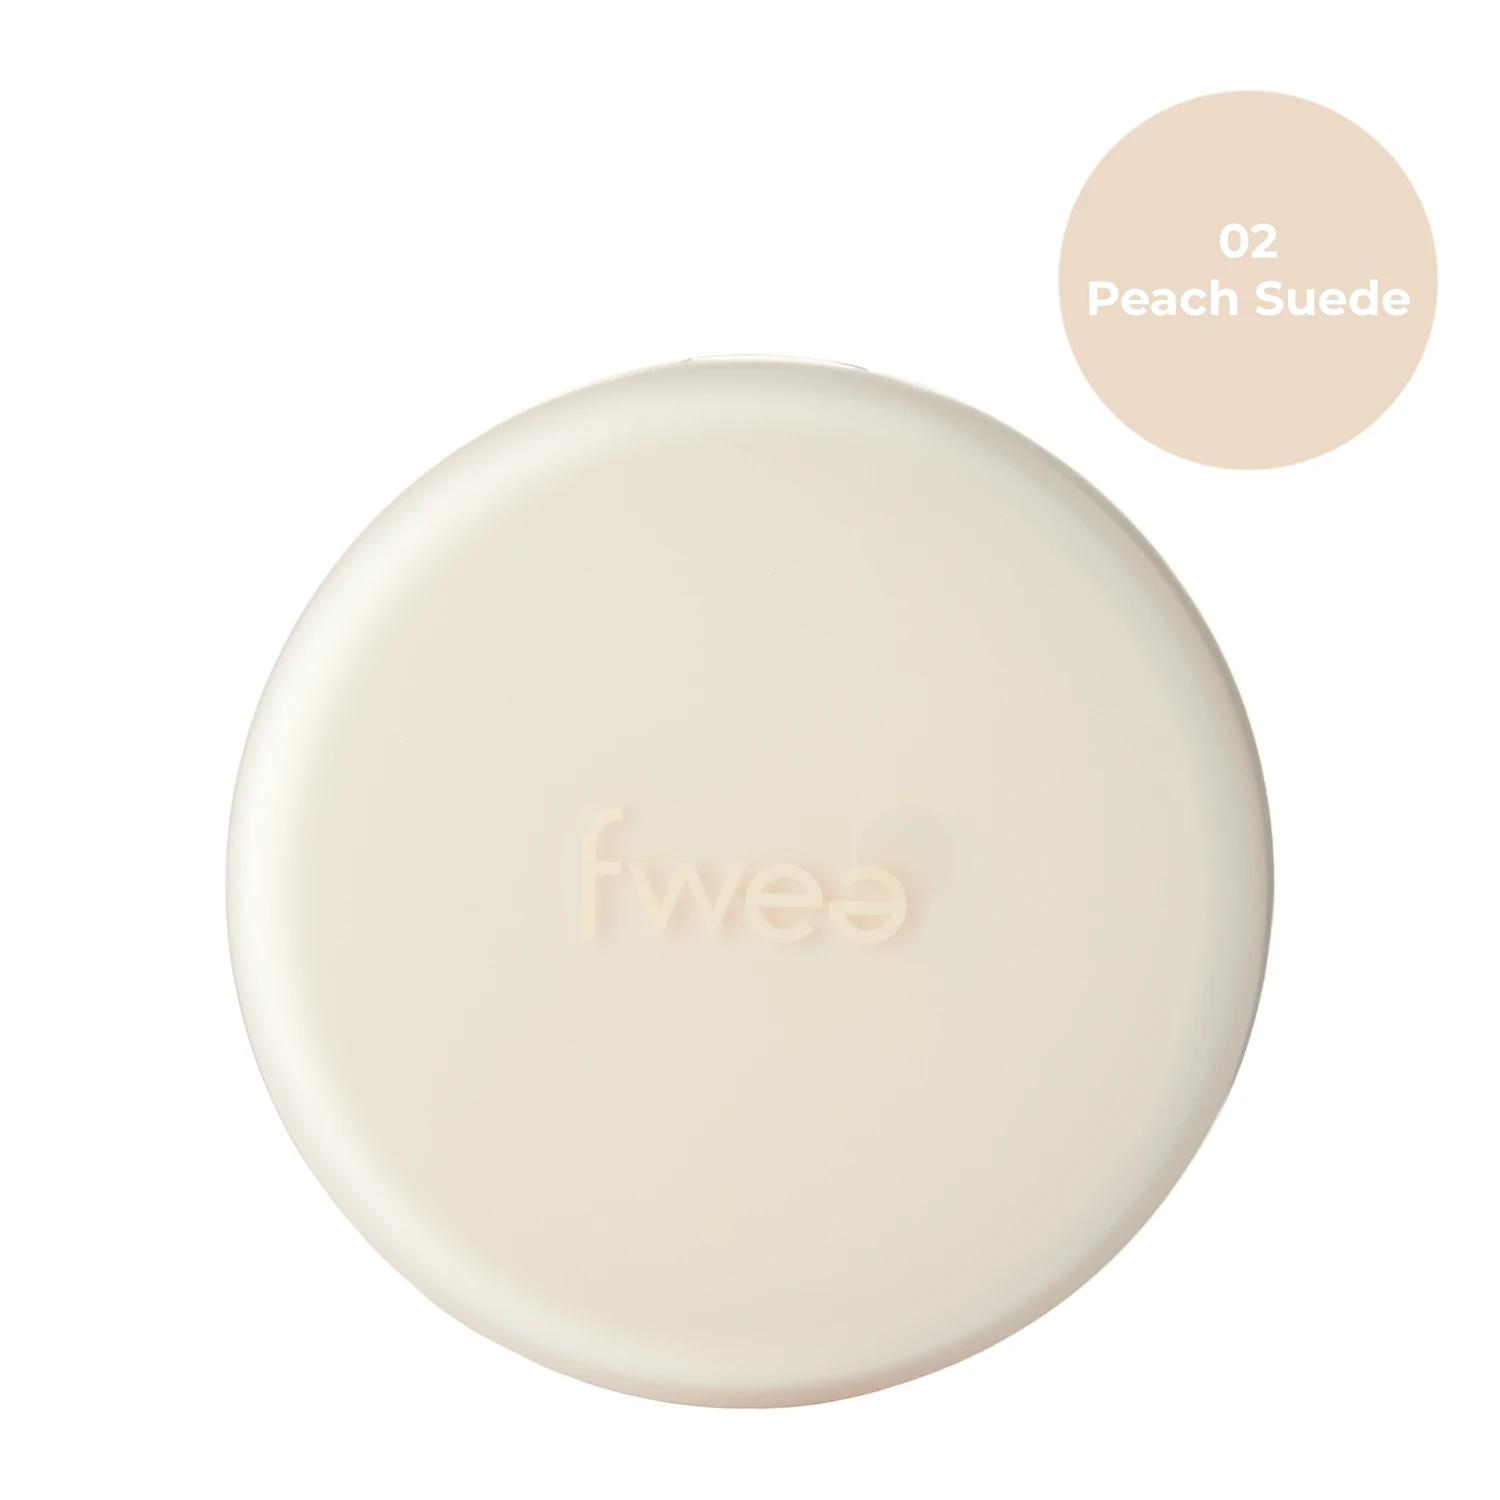 Fwee - Cushion Suede SPF50+ PA+++ - Nawilżający Podkład do Twarzy w Poduszce - 02 Peach Suede - 15g